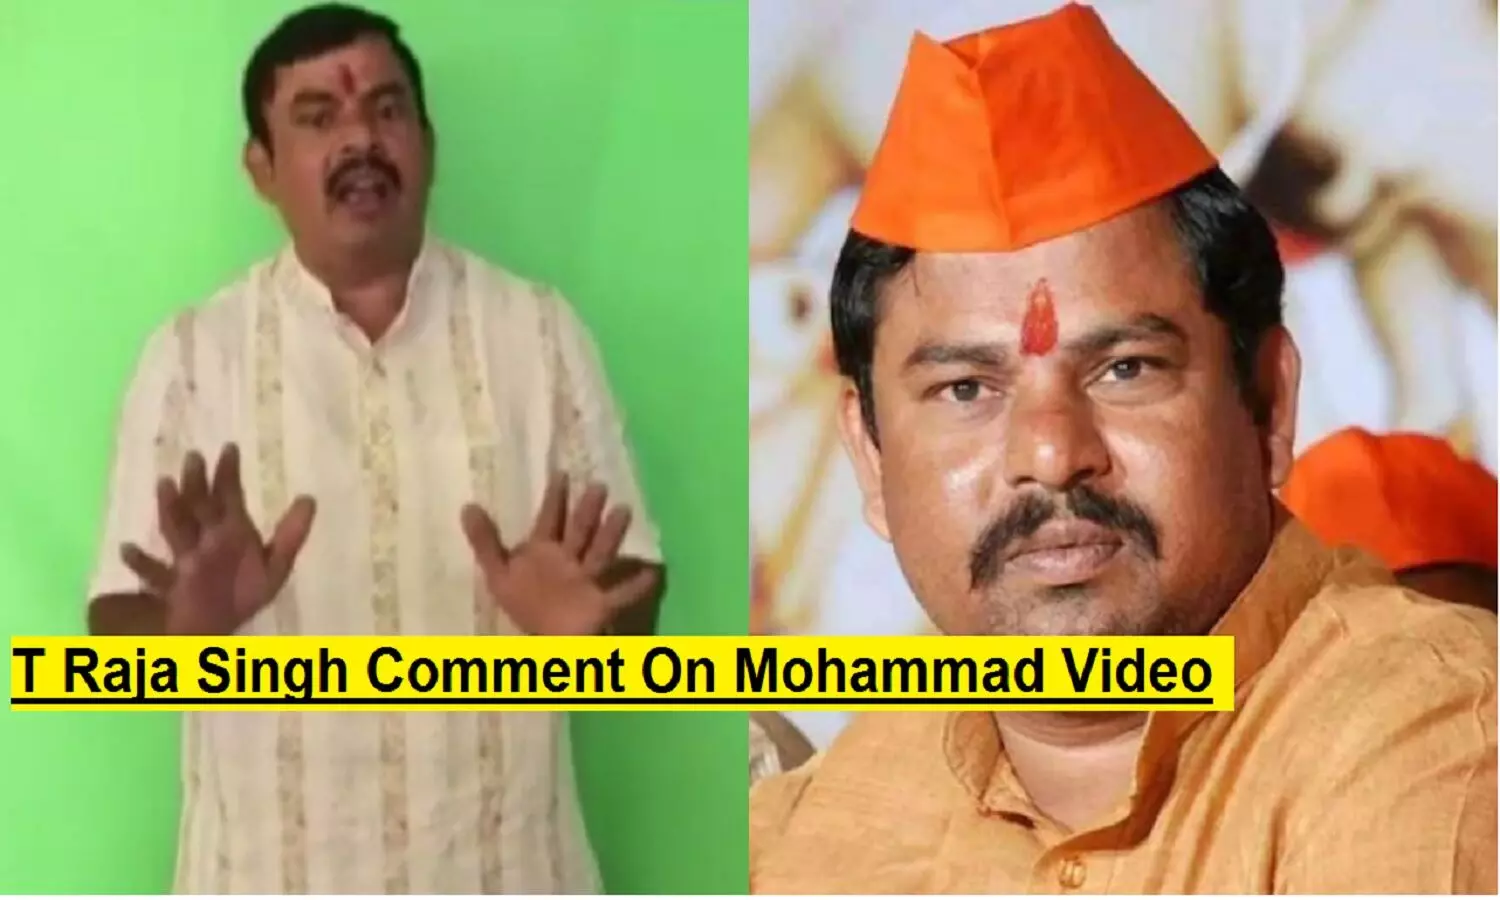 T Raja Singh Video On Paigambar Mohammad: टी राजा सिंह ने अपने वीडियो में पैगम्बर मोहम्मद का नाम तक नहीं लिया!